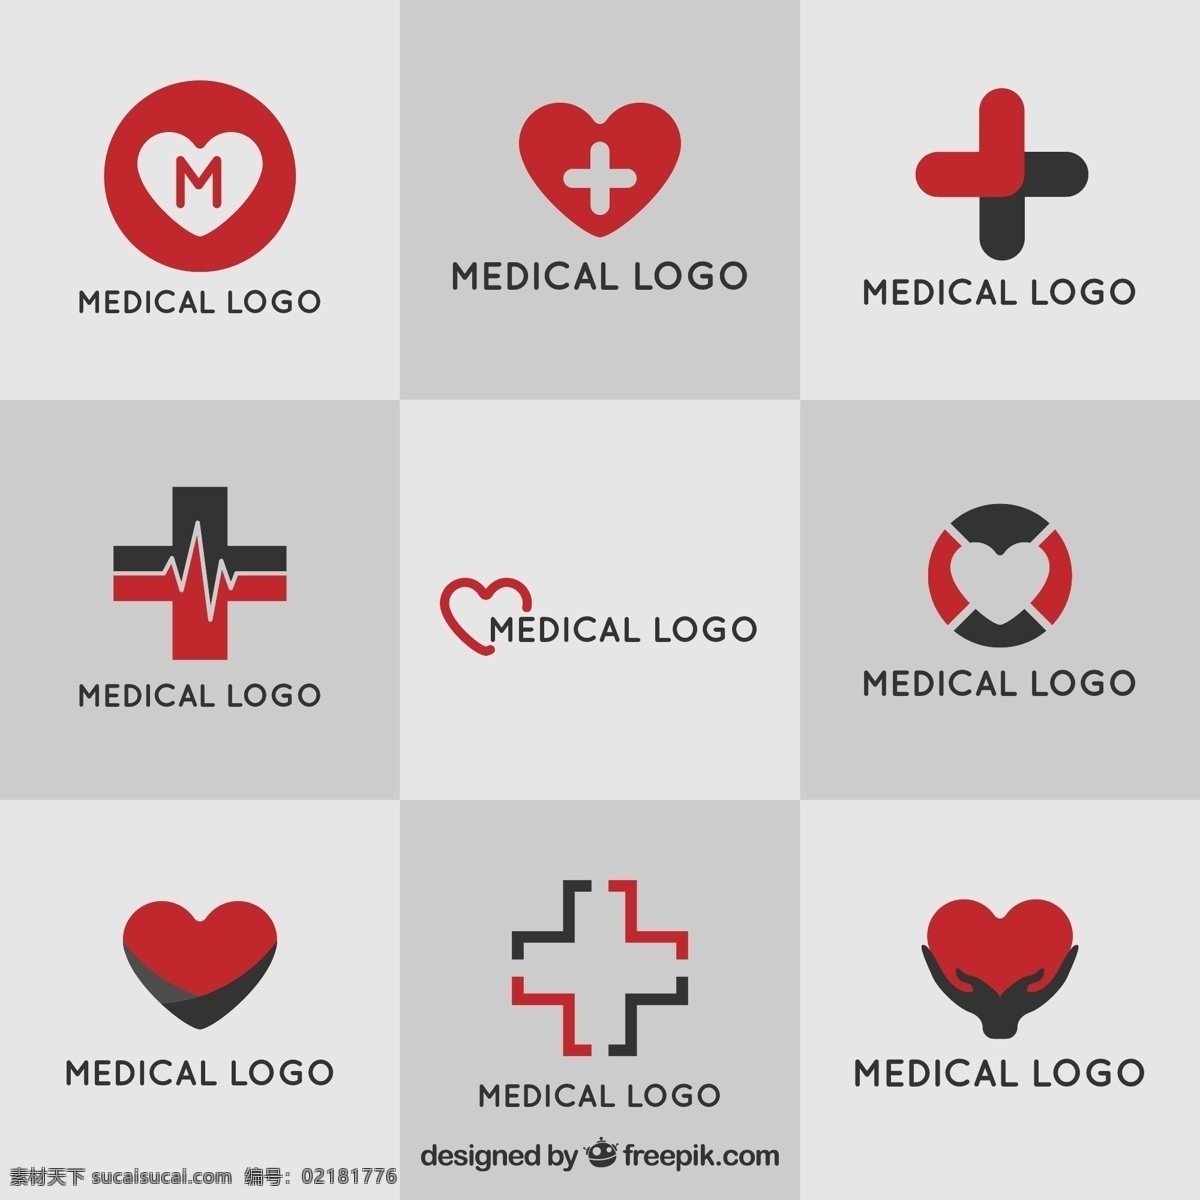 医疗标识征集 标识 商业 手 医疗 健康 医生 红 平 跨 企业 医药 公司 品牌 平面设计 心脏 企业身份 符号 身份 灰色